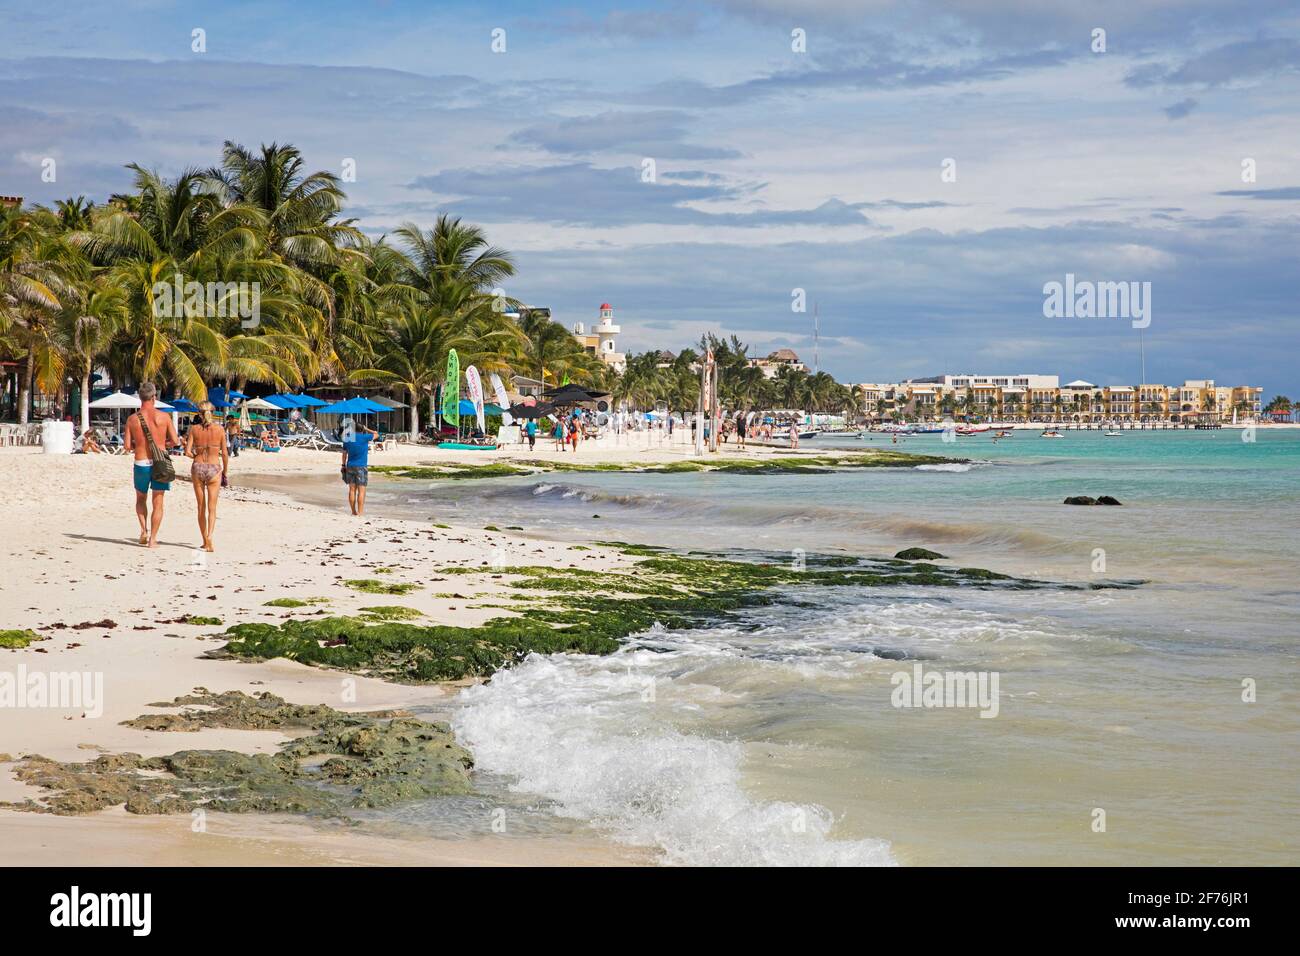 Turisti occidentali che camminano sulla spiaggia di sabbia bianca e alberghi lungo Playa del Carmen, Riviera Maya, Solidaridad, Quintana Roo, Penisola di Yucatán, Messico Foto Stock